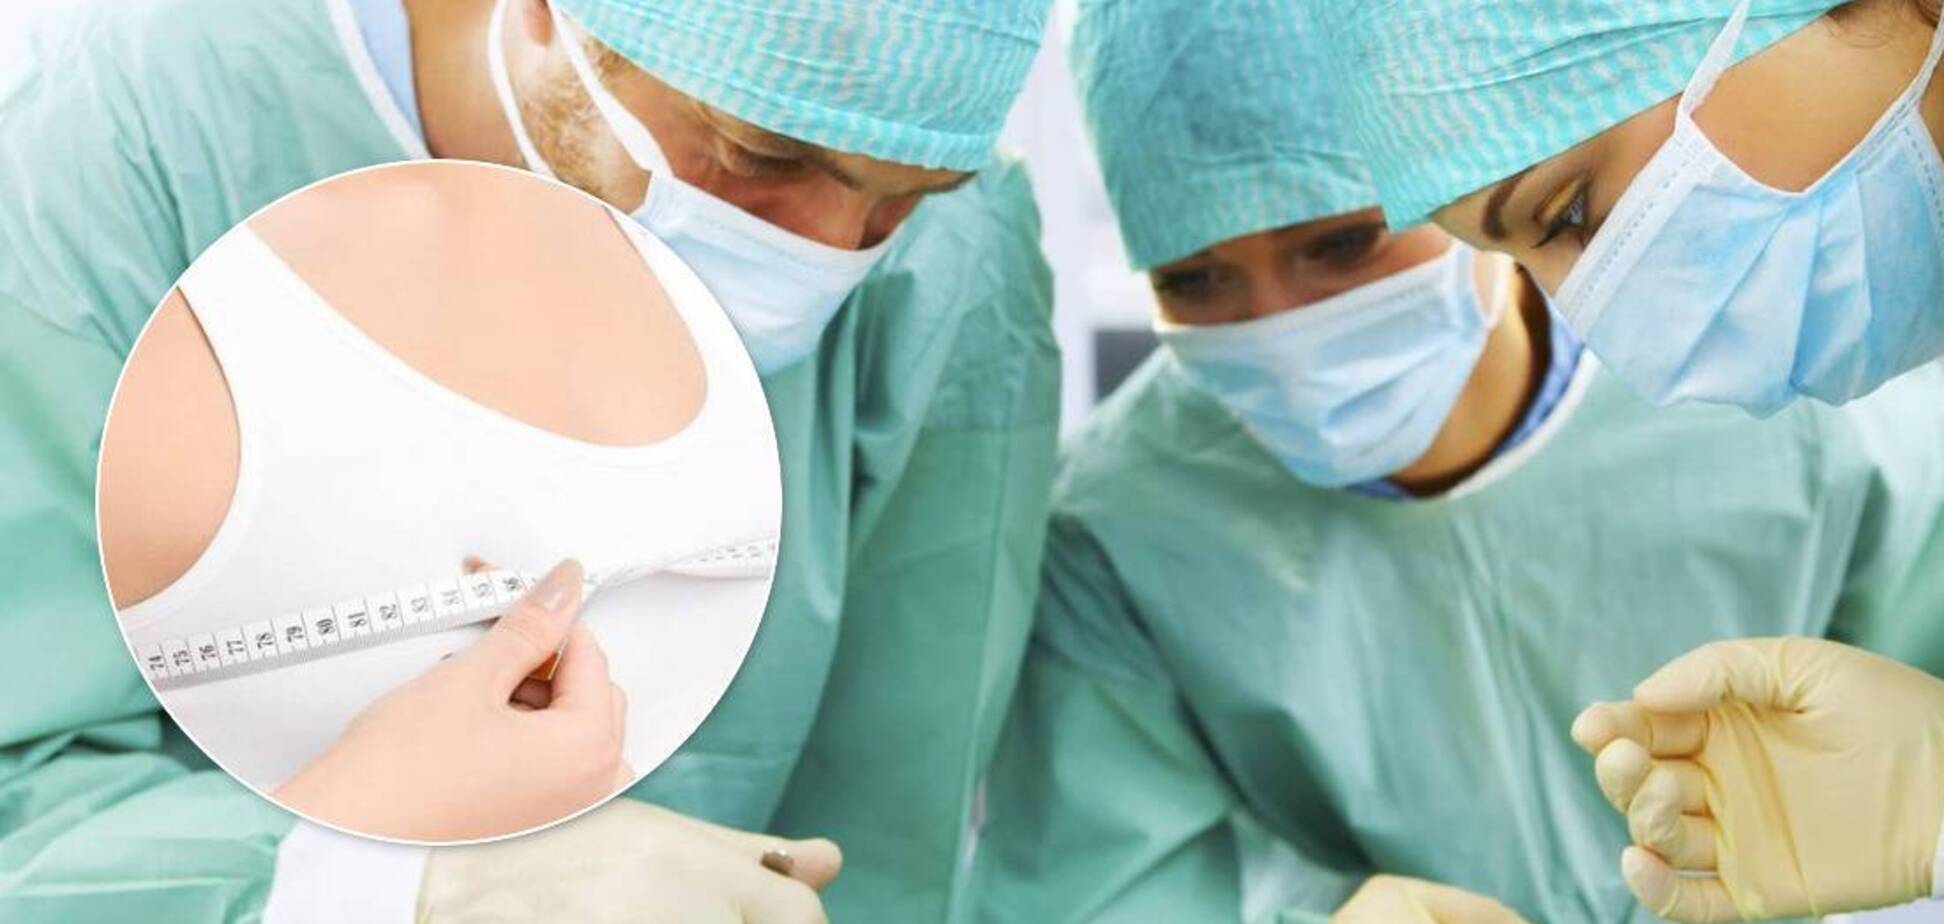 У Полтаві пластичні хірурги 'пошматували' двох жінок: клієнтки хотіли збільшити груди